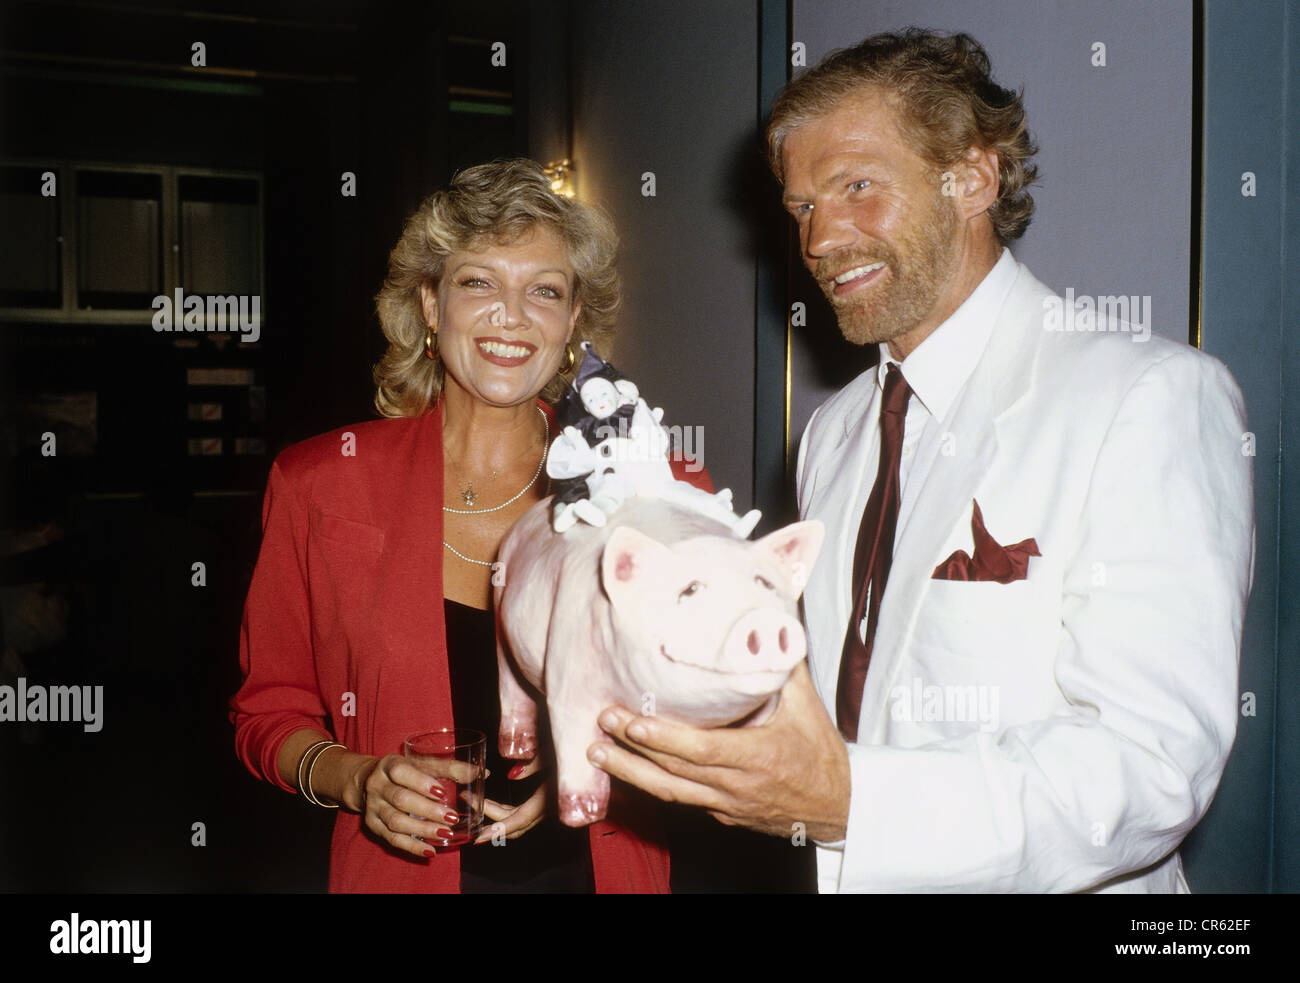 Harmstorf, Raimund, 7.10.1940 - 3.5.1988, acteur allemand, demi-longueur avec Franziska Bonnen lors de la première du jeu 'Wer mit Wem', Munich, Kleine Komödie am Max II, 4.7.1987, Banque D'Images